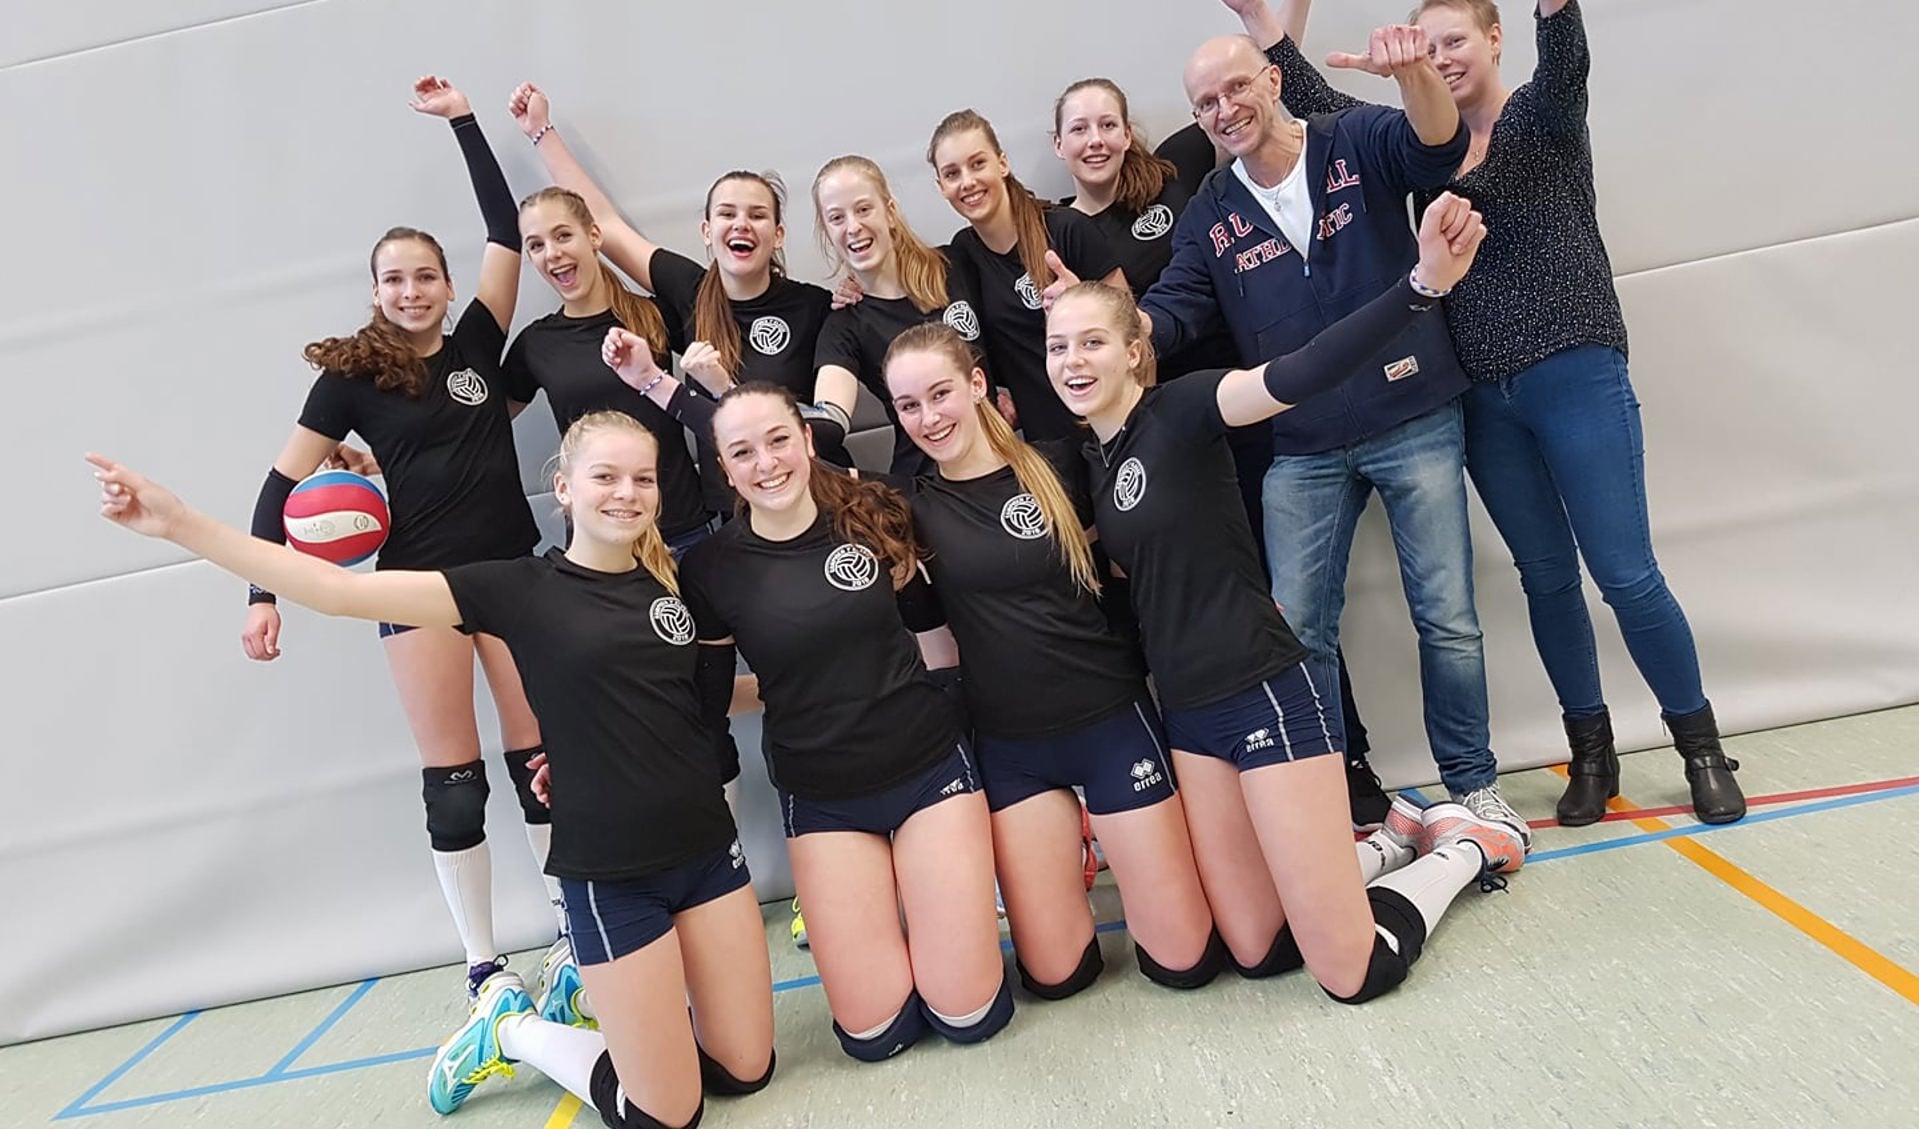 • De dames wonen hun kampioenswedstrijd tegen WIK uit Groot-Ammers met 3-2.